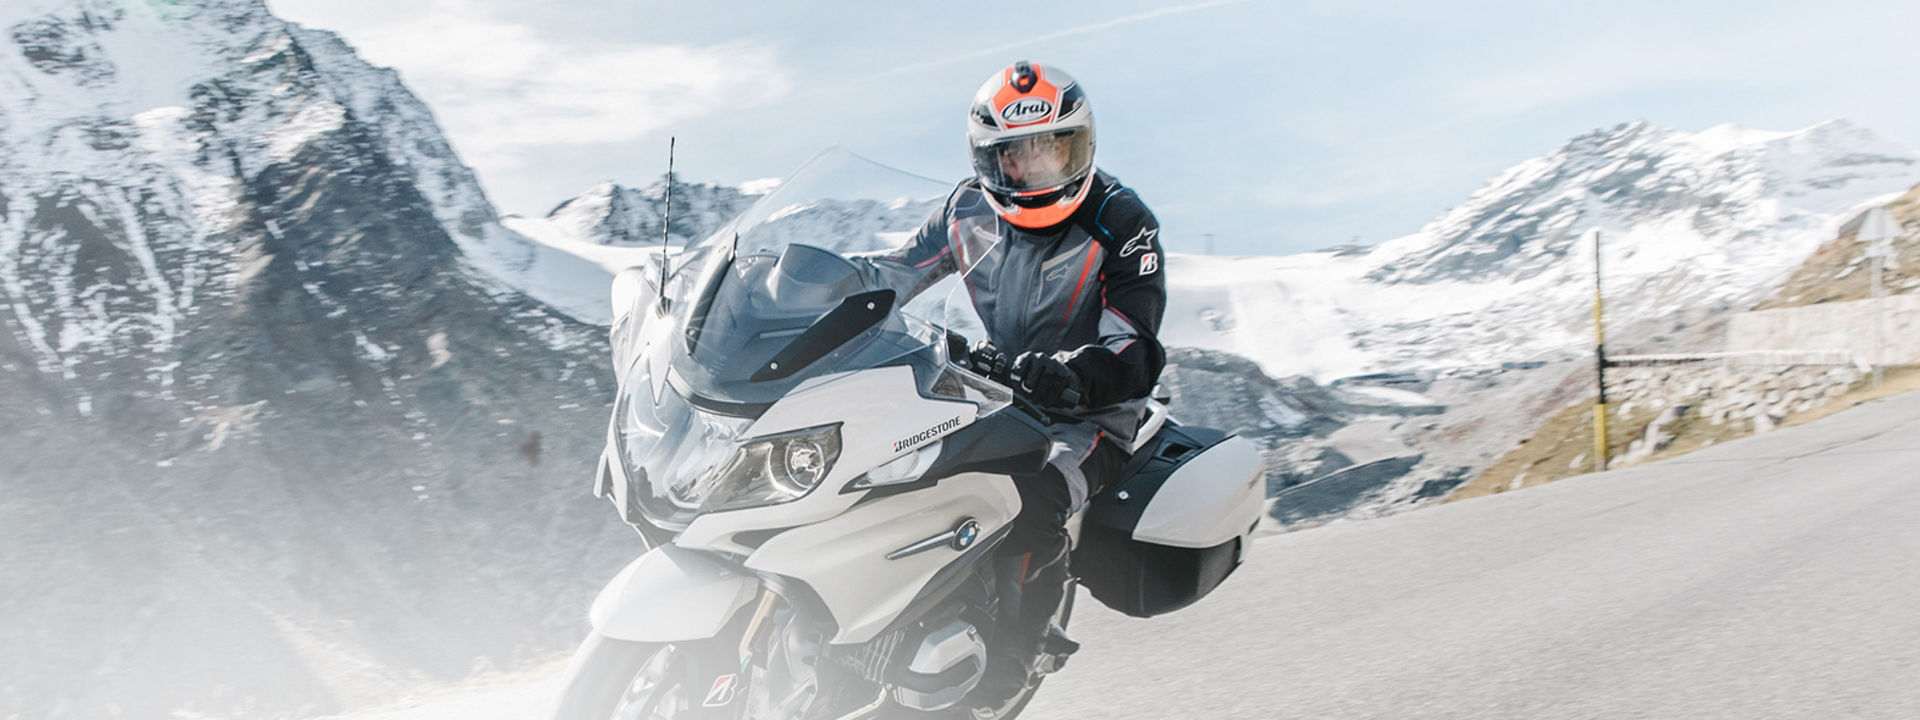 Bilden visar en motorcyklist körandes på sin motorcykel med Bridgestone Touring-däck på en naturskön väg med berg i bakgrunden.